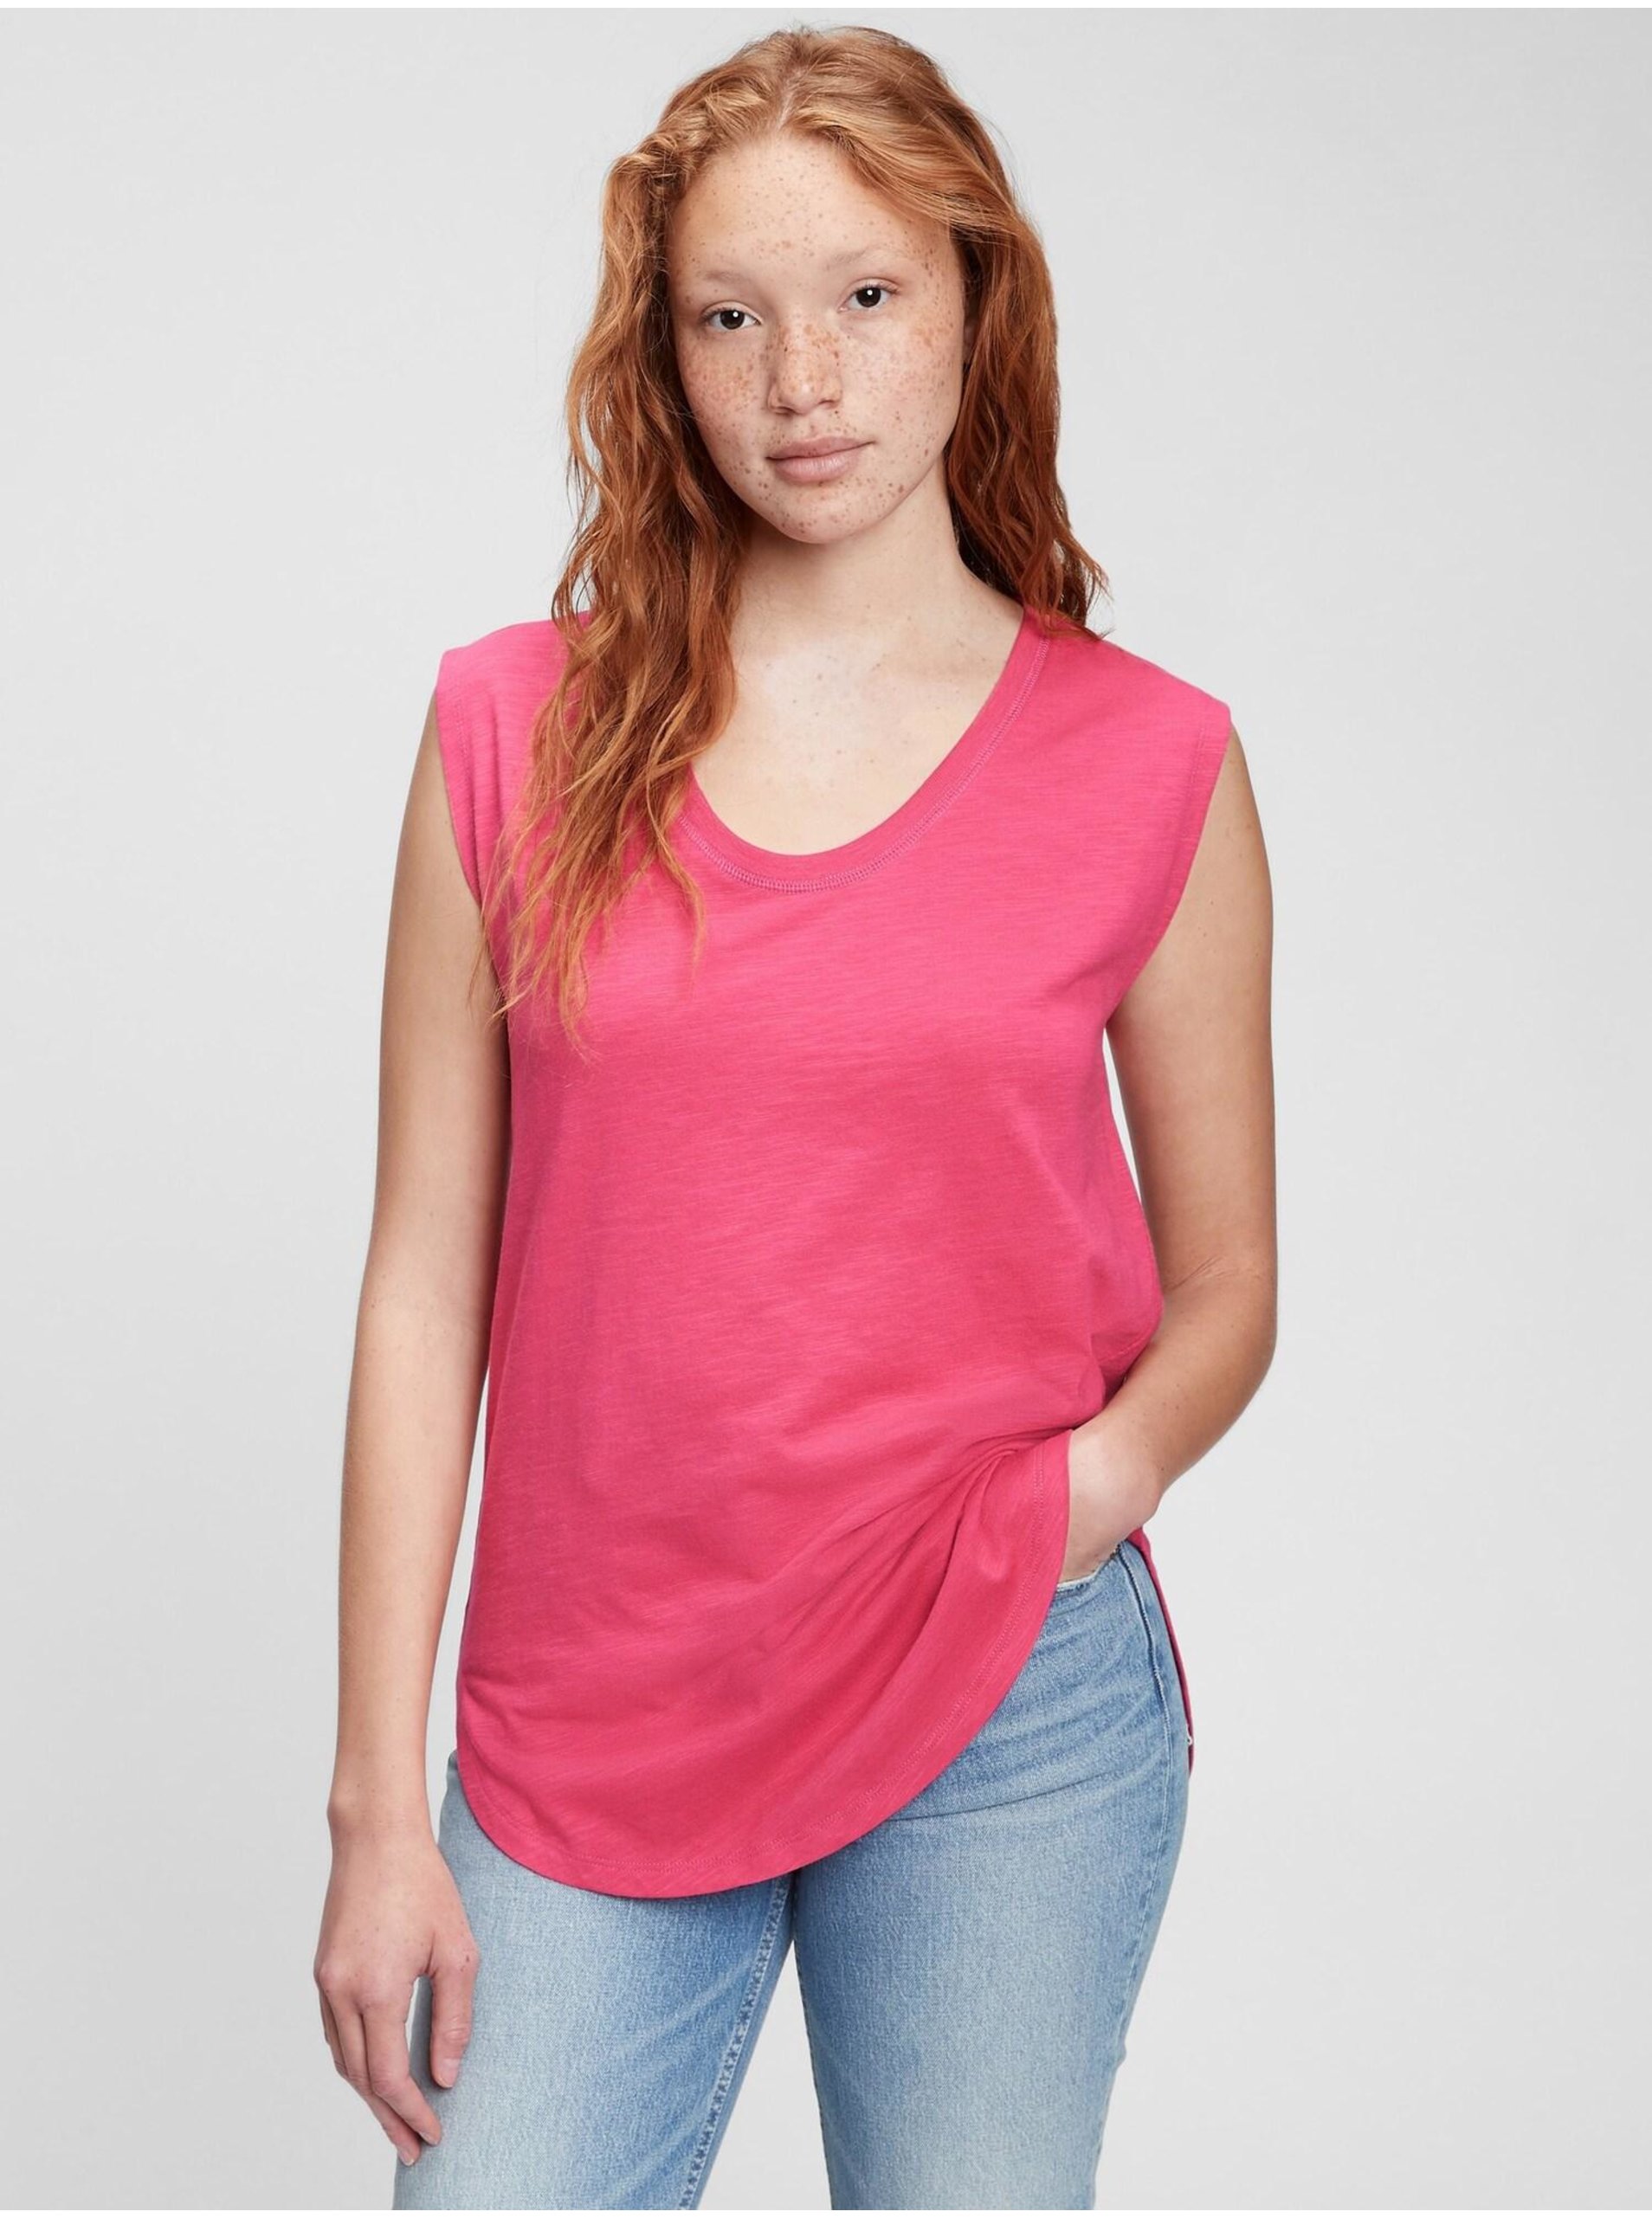 Lacno Ružové dámske tričko muscle tunic